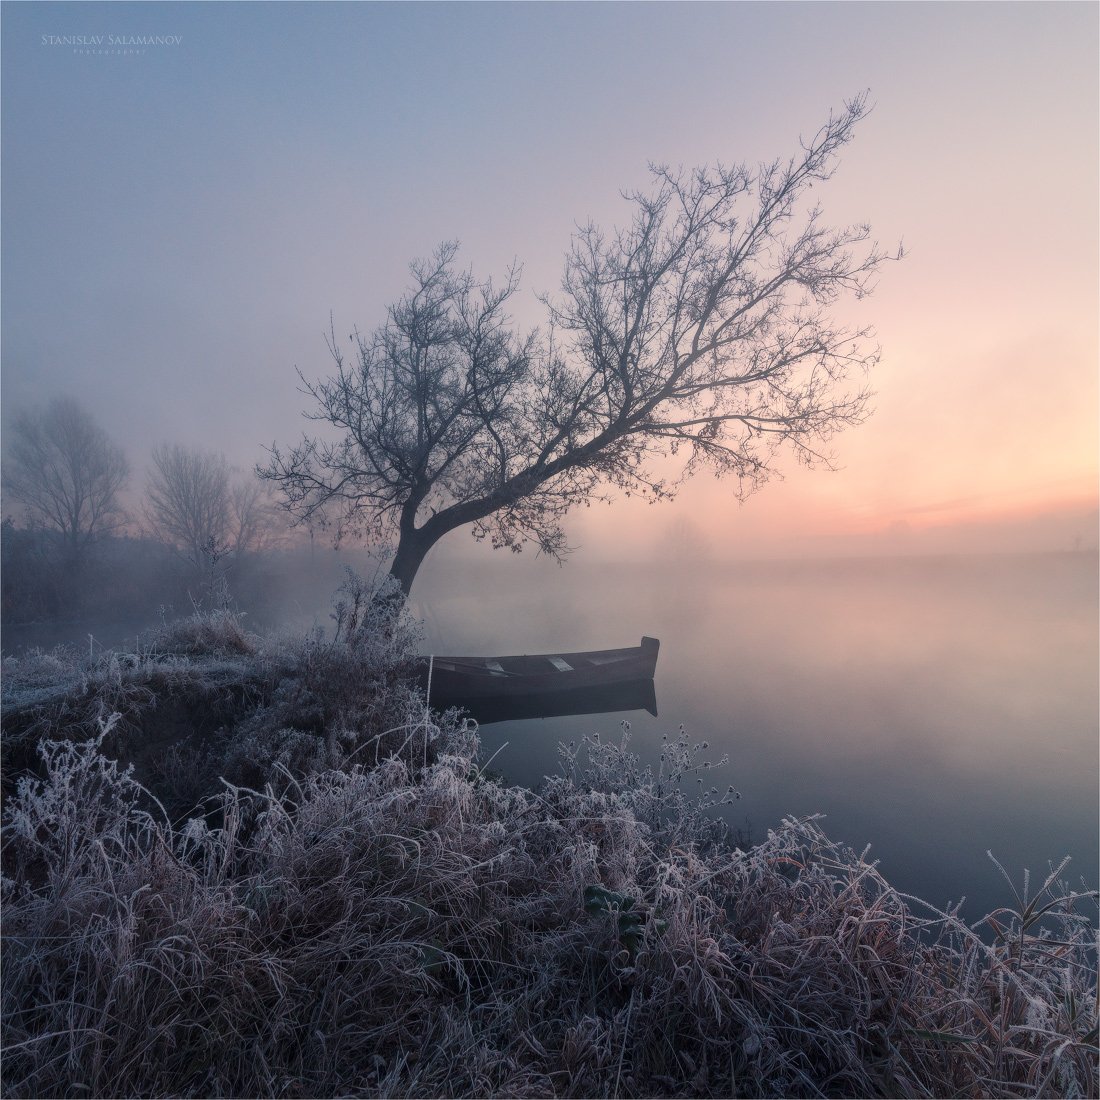 утро, туман, река, заморозок, иней, рассвет, лодка, дерево, зарево, свет, цвет, пейзаж, Станислав Саламанов